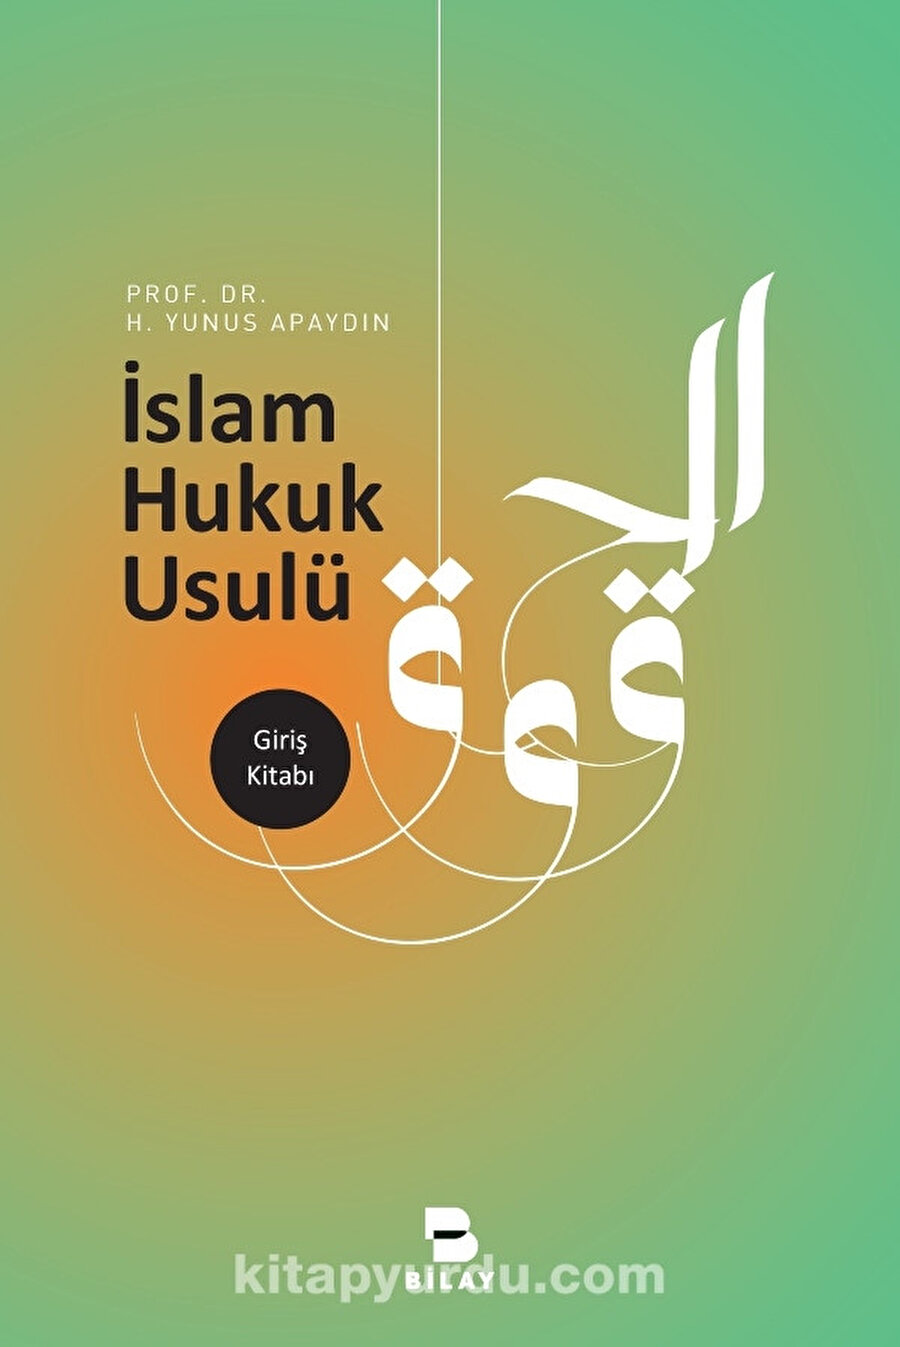 İslam Hukuk Usulü Prof. Dr. Hacı Yunus Apaydın BİLAY (BİLİMSEL ARAŞTIRMA YAYINLARI)